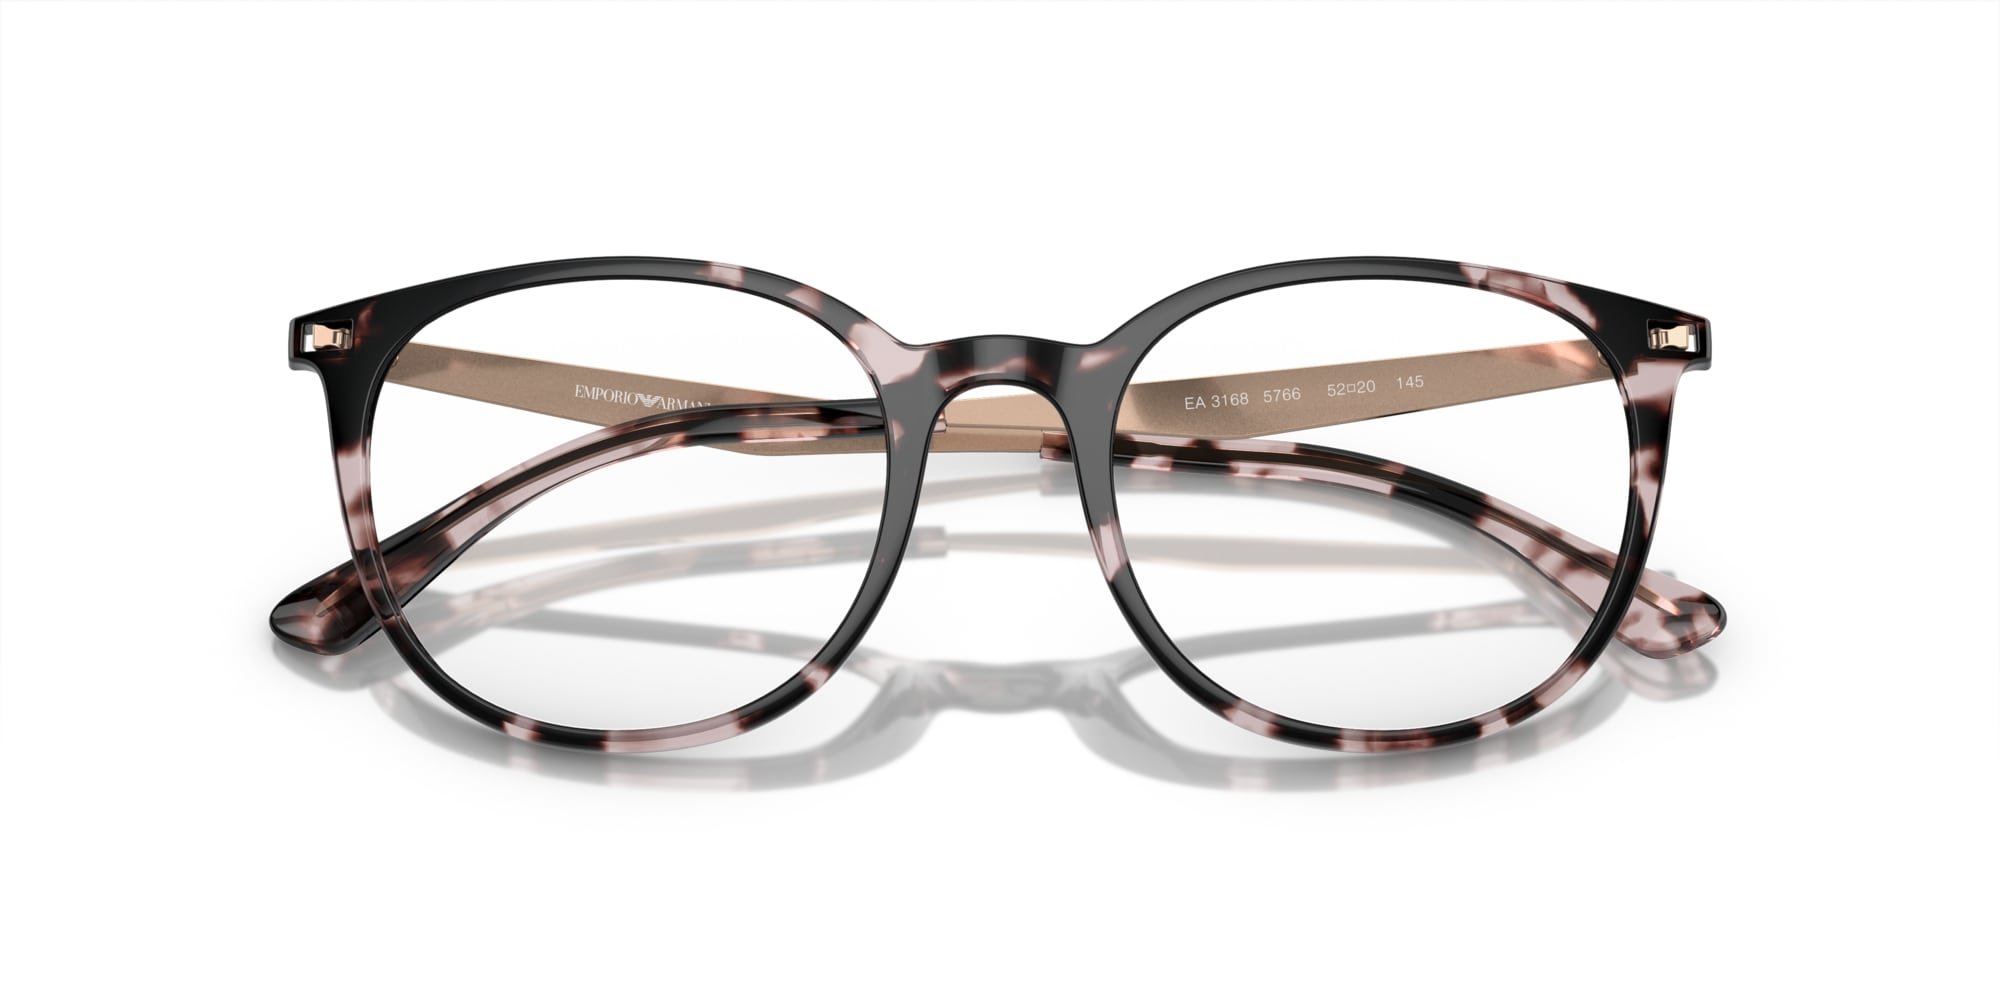 Emporio Armani Brille für Damen in pink/havana EA3168 5766 52